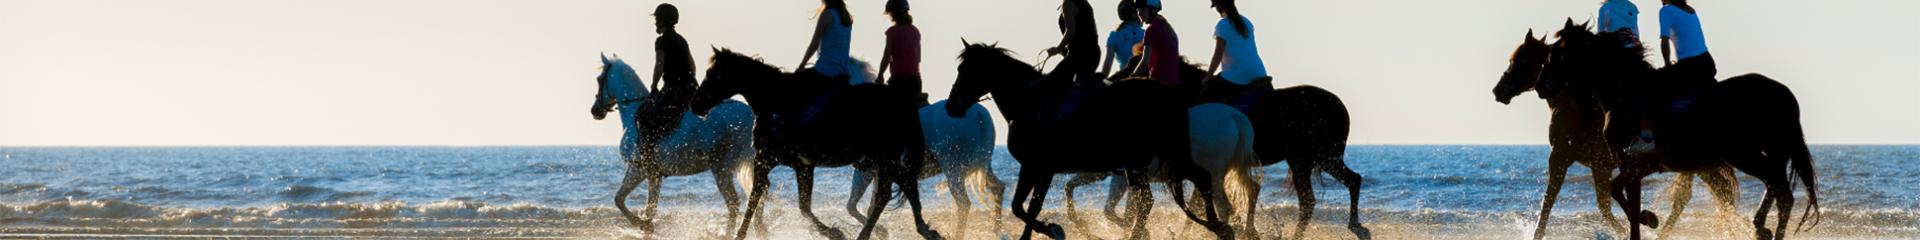 Les chevaux sur la plage de Cabourg